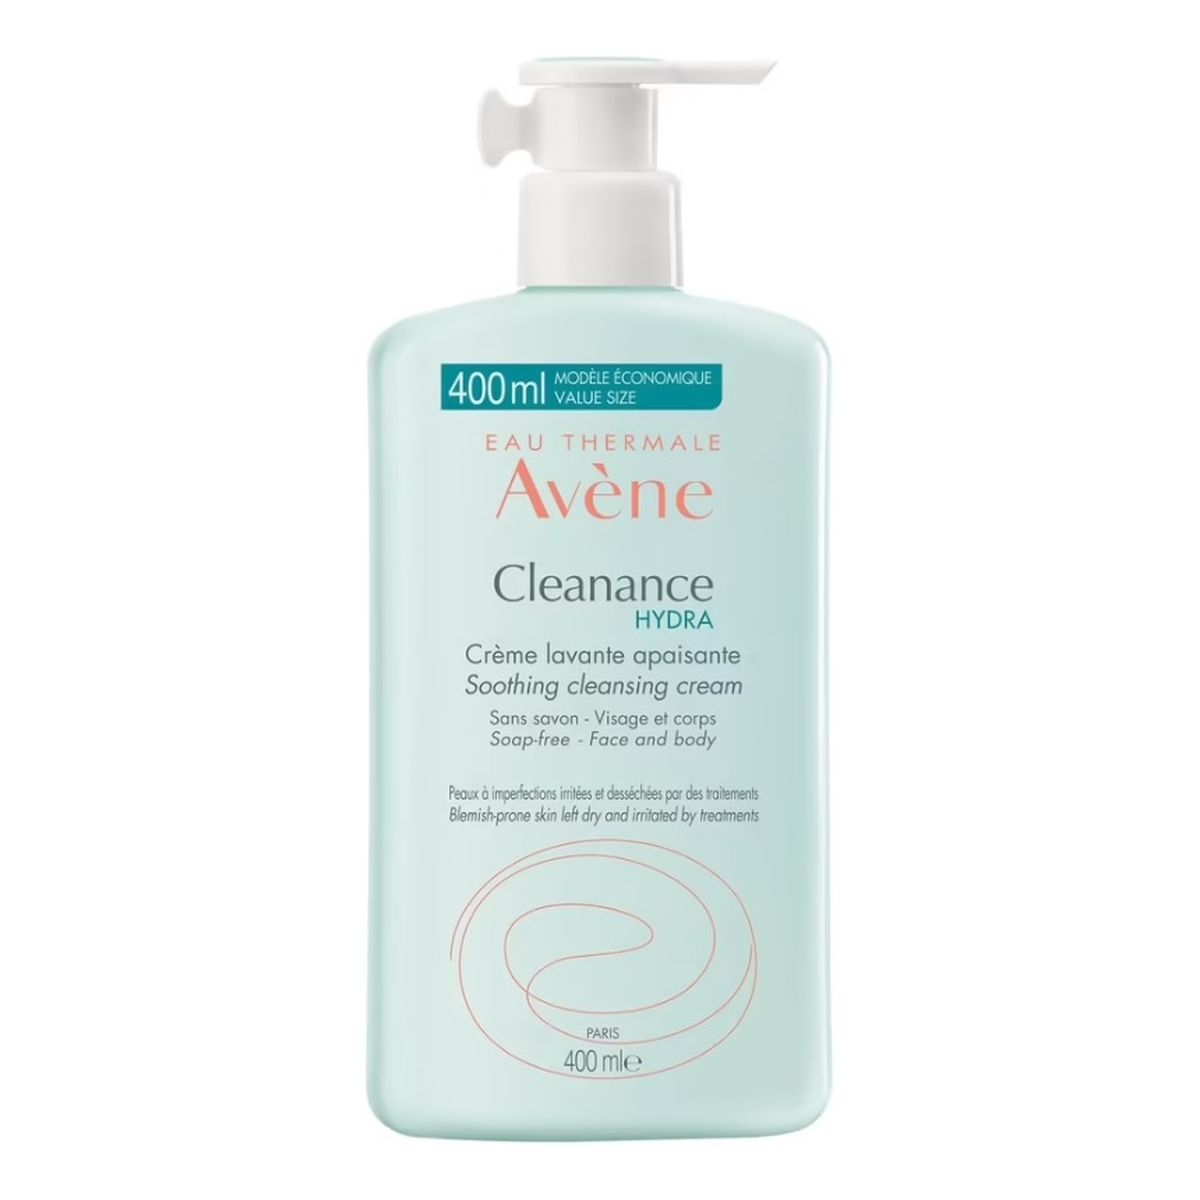 Avene Cleanance Hydra Soothing Cleansing Cream kojący Krem oczyszczający 400ml